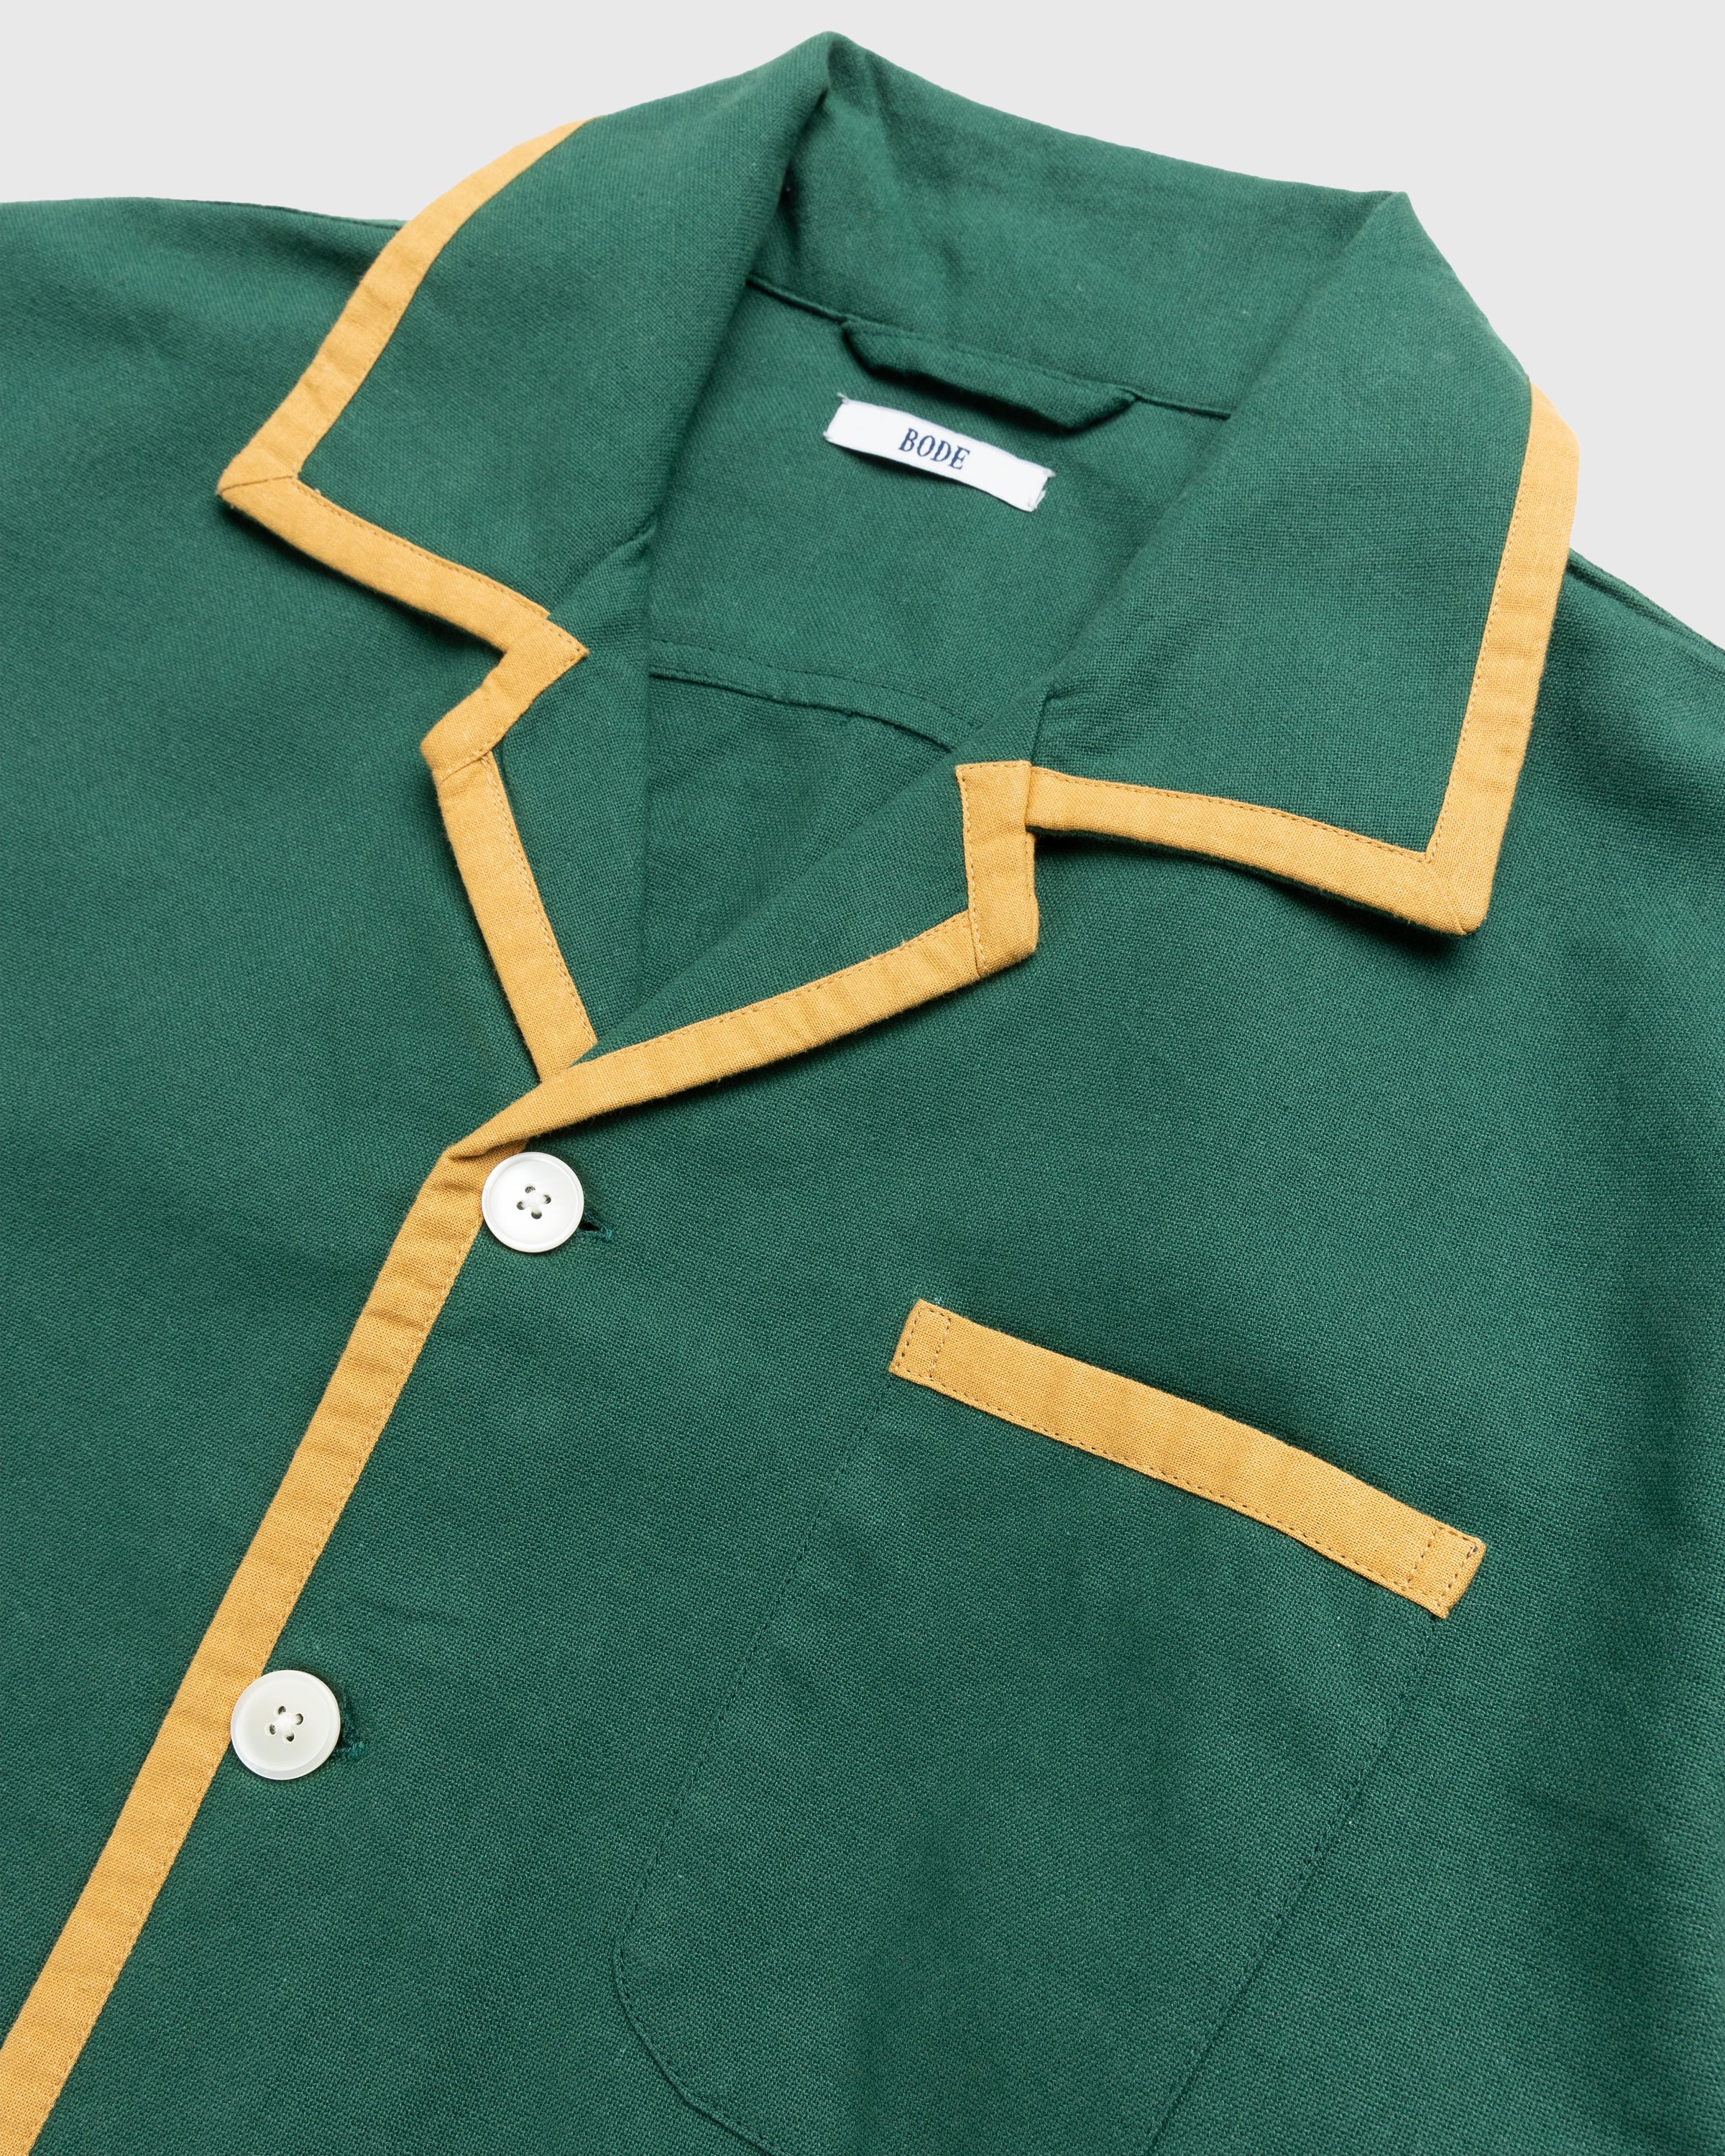 Bode - Dessert Applique Longsleeve Shirt Green - Clothing - Green - Image 2